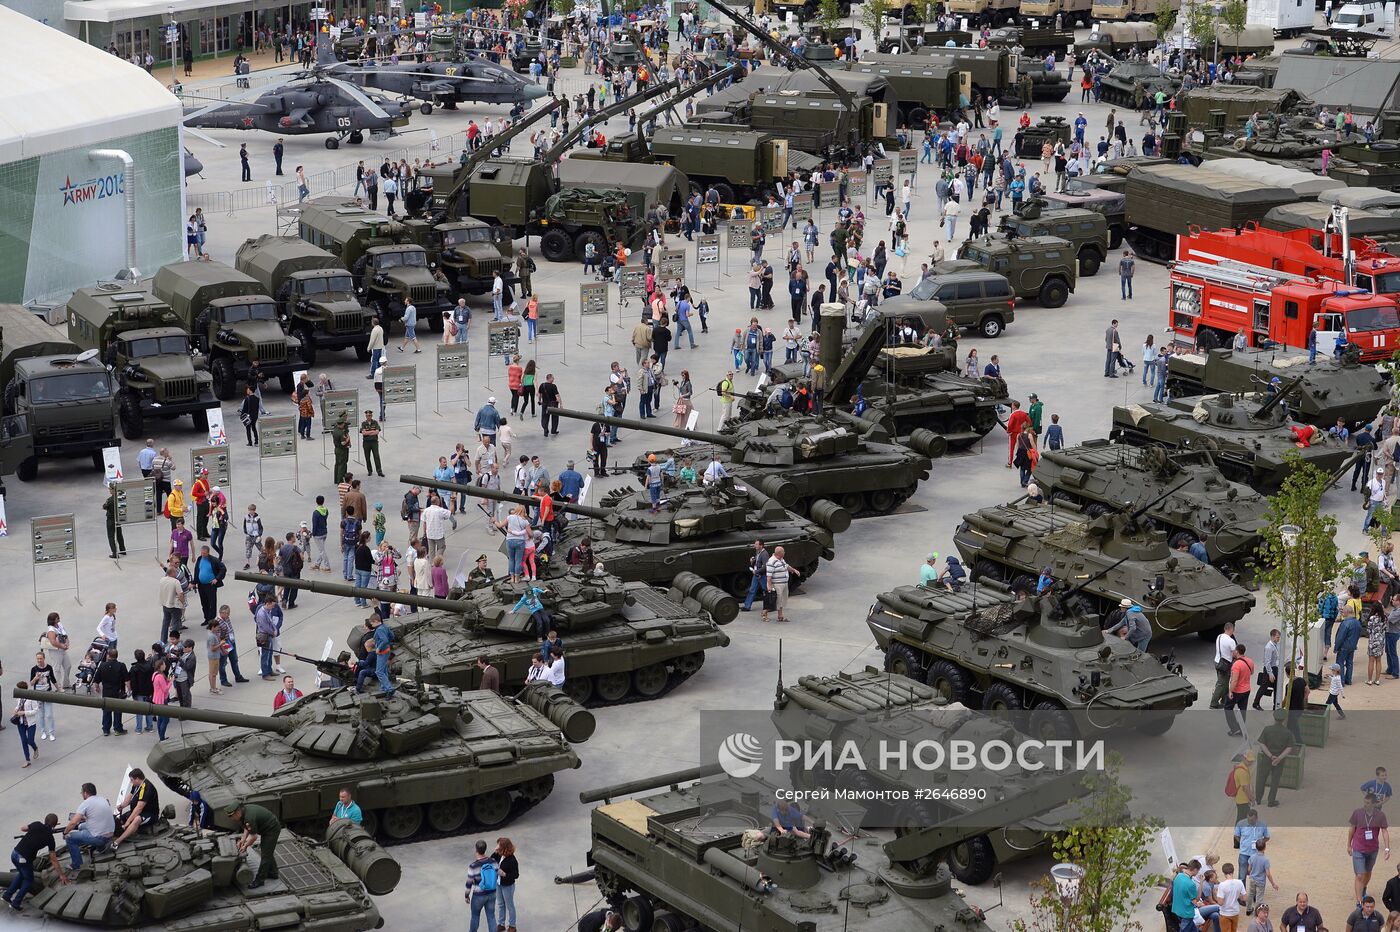 Премьер-министр РФ Д.Медведев посетил Международный военно-технический форум "Армия-2015"